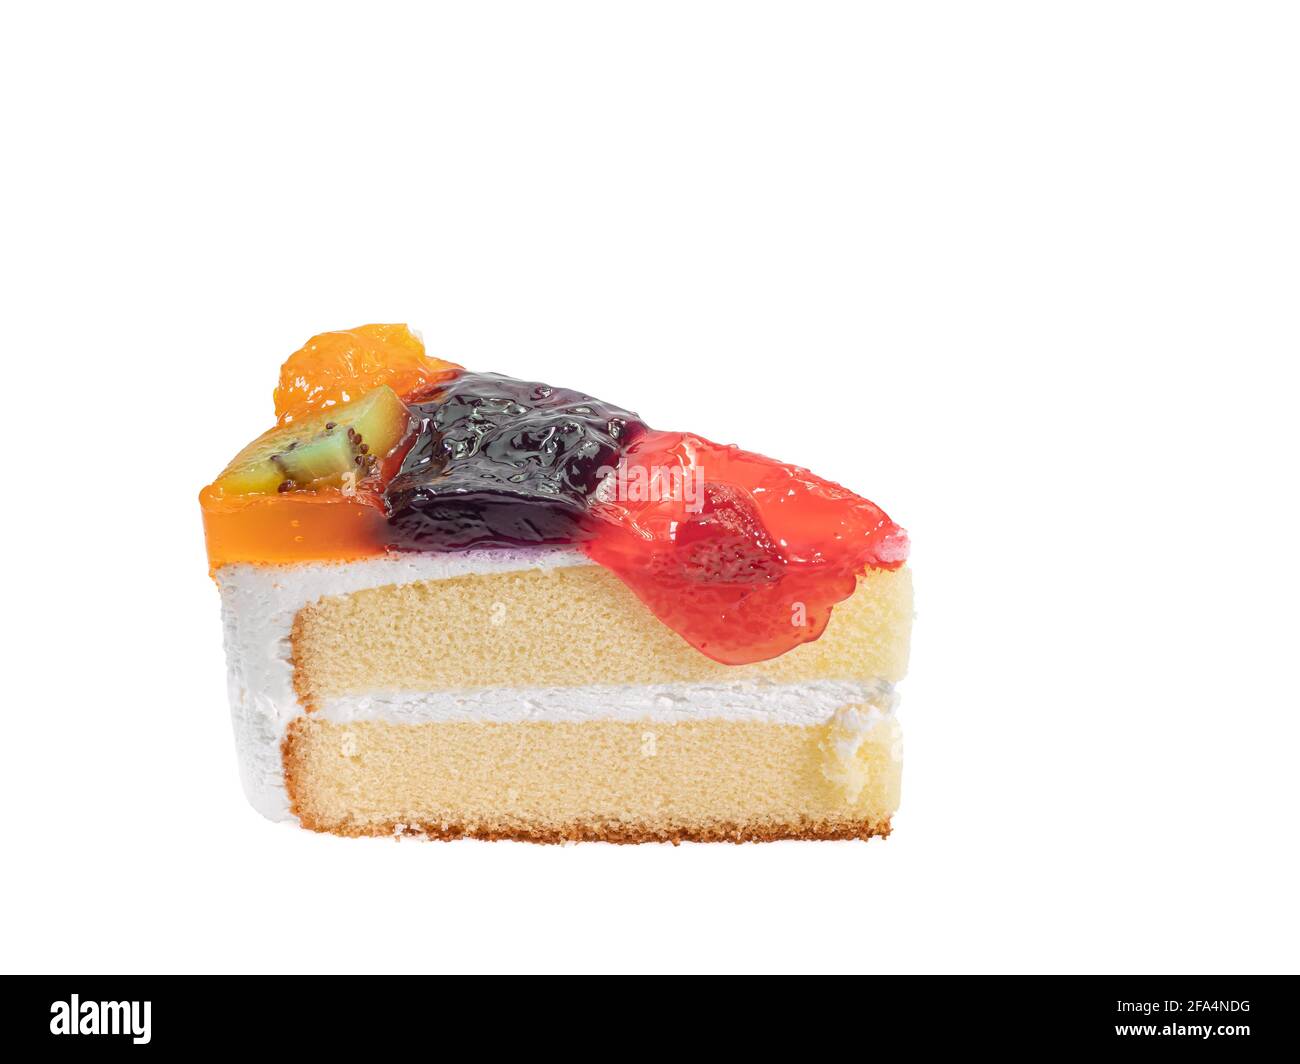 Mixed fruit cake, a close up of homemade fruitcake bakery with kiwi, orange, blueberry and strawberry topping isolated on white background. Stock Photo